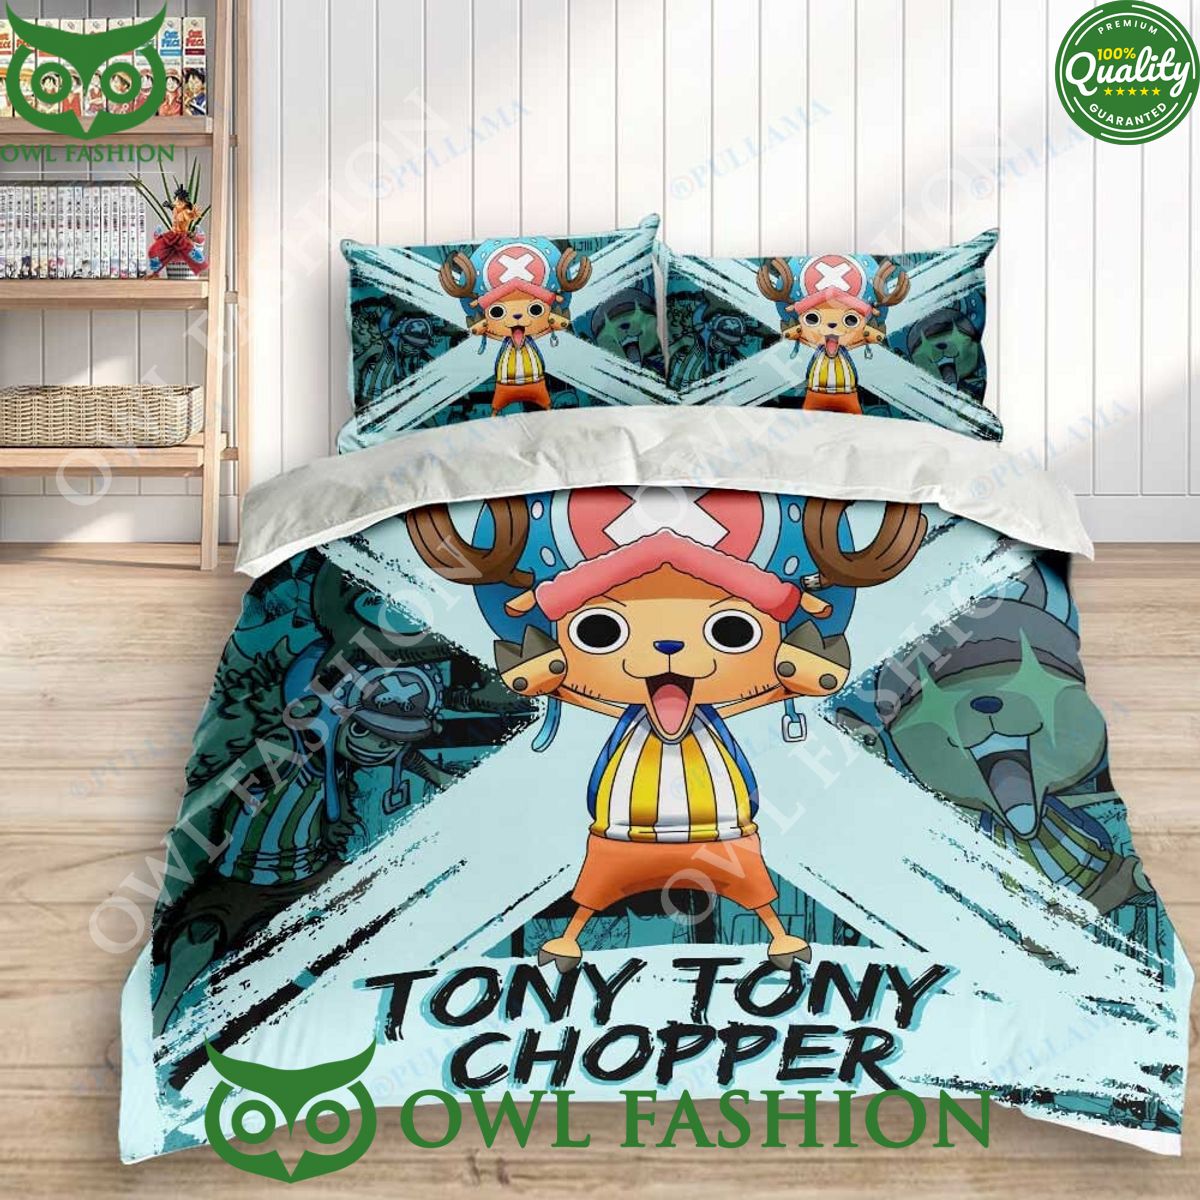 Tony-Tony Chopper  One piece chopper, One piece seasons, One